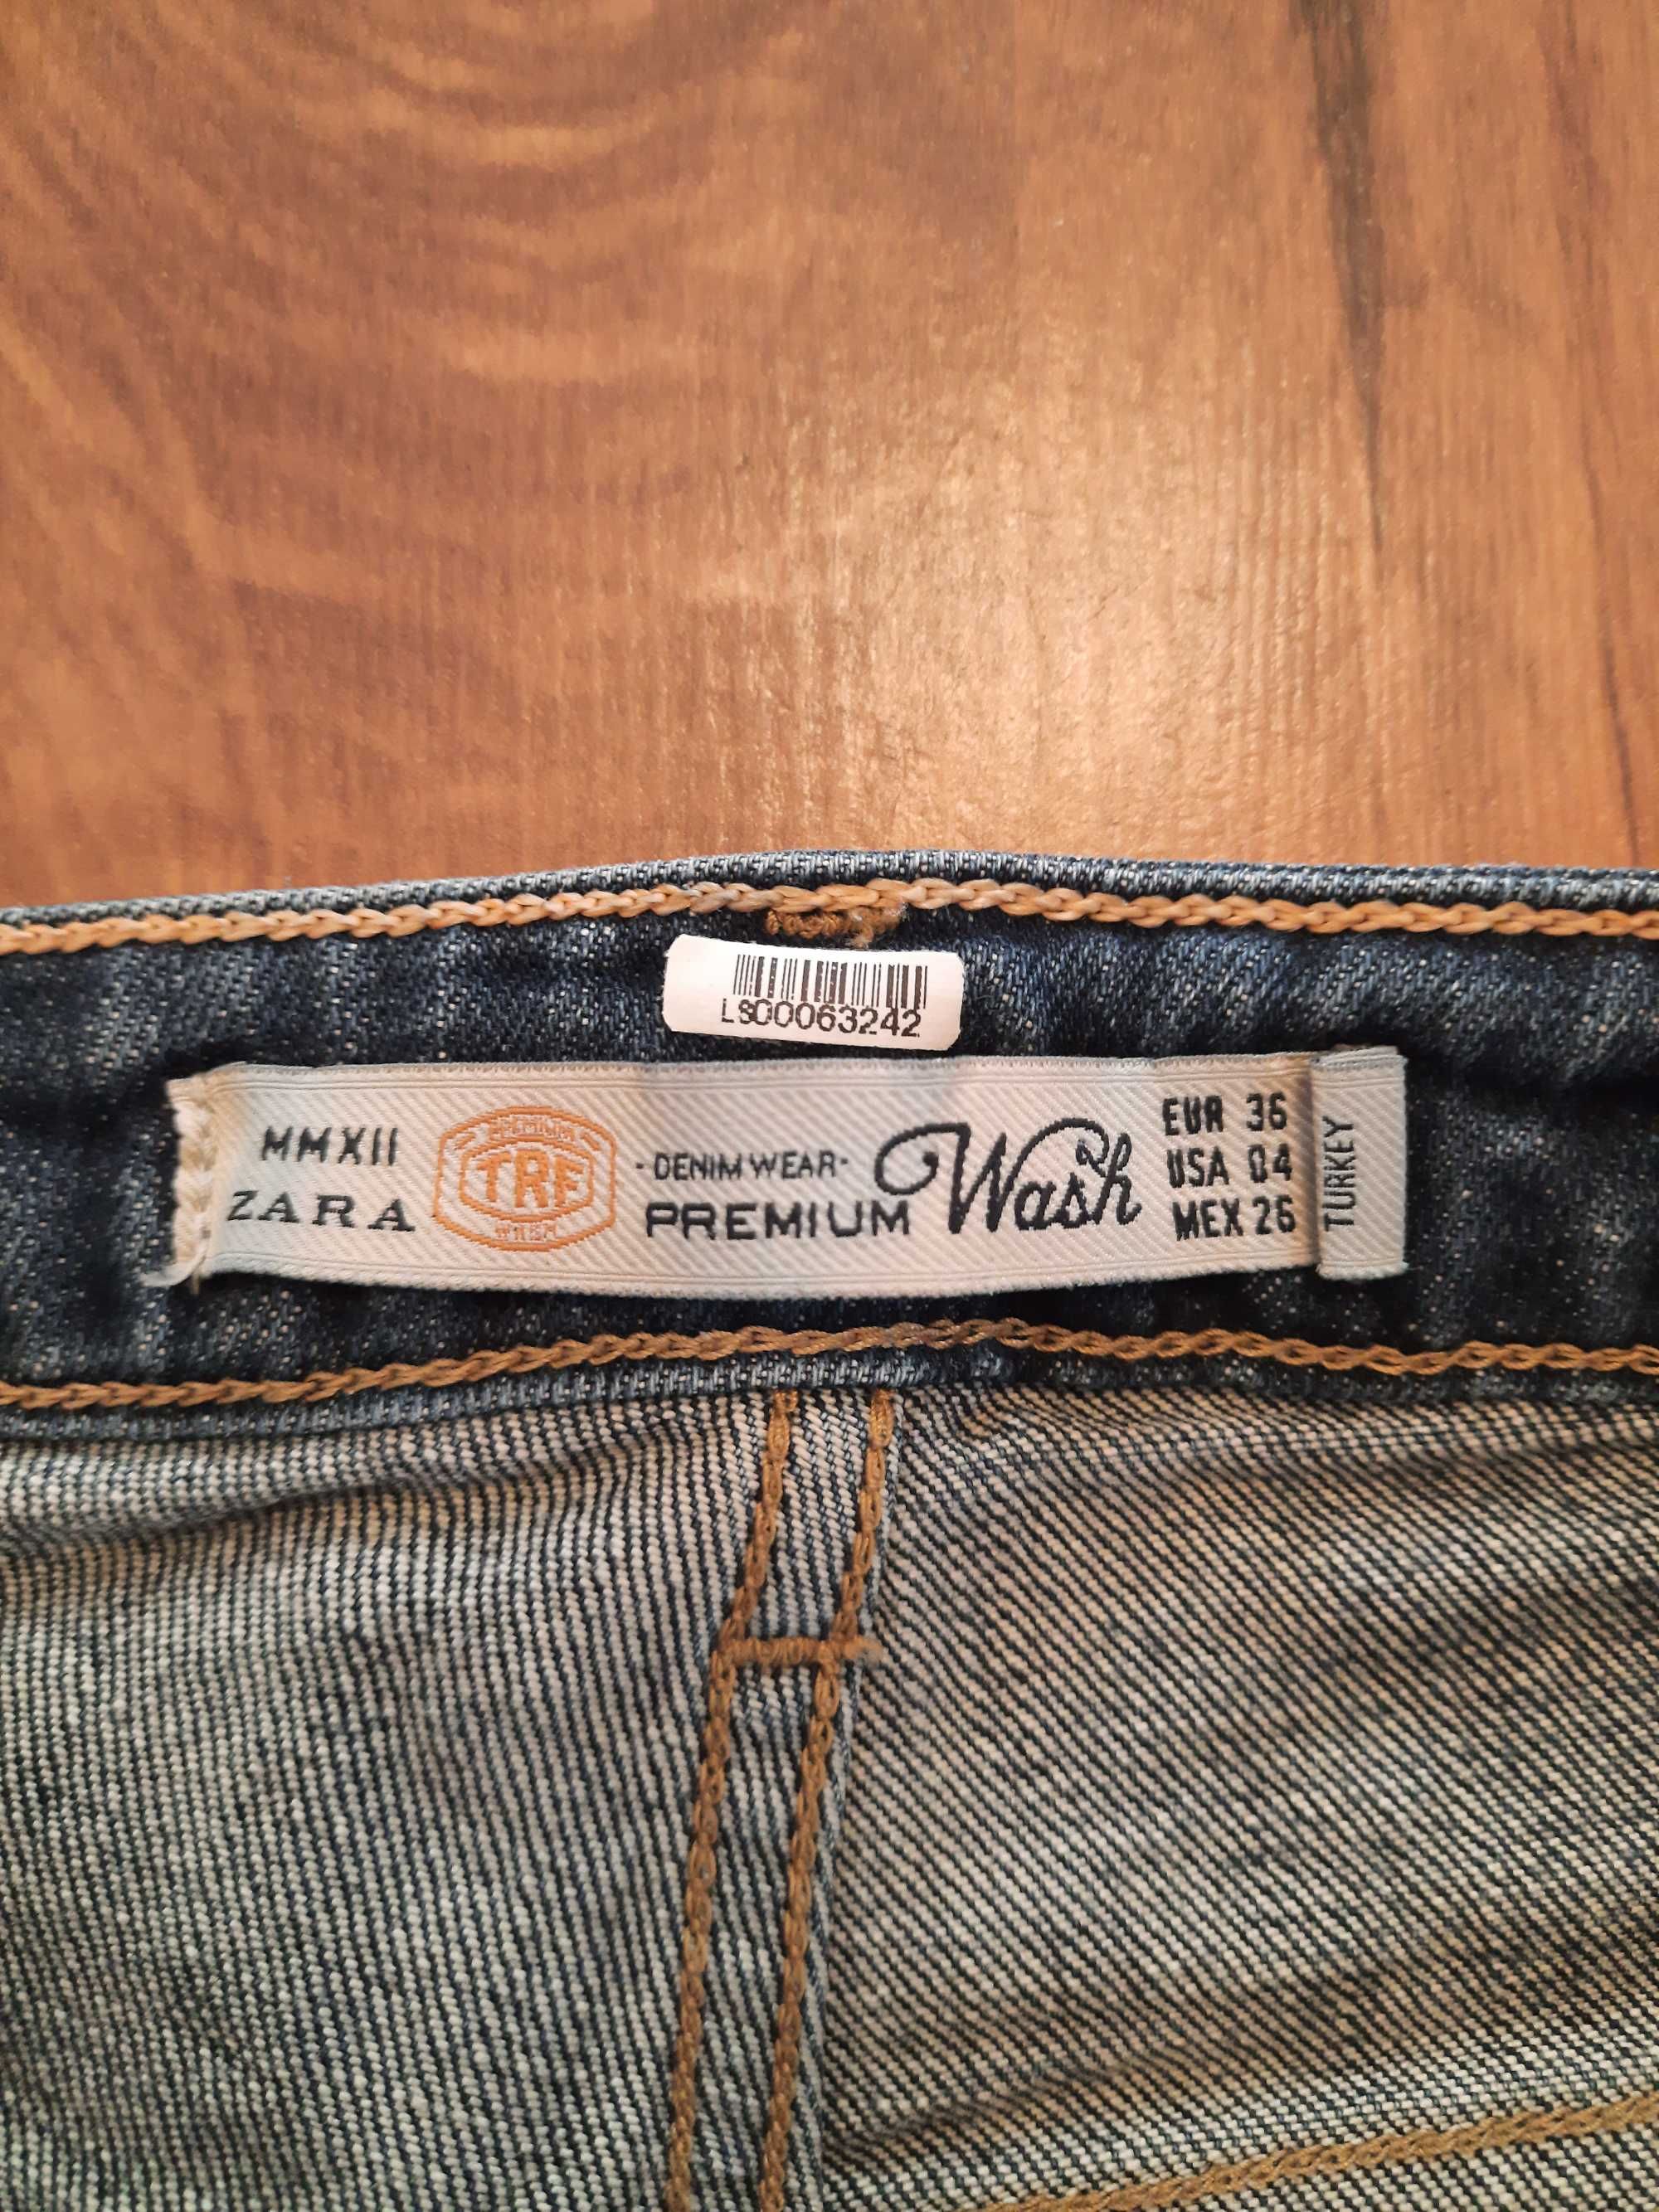 Szorty, spodenki jeansowe Zara Premium Wash TRF rozmiar 36